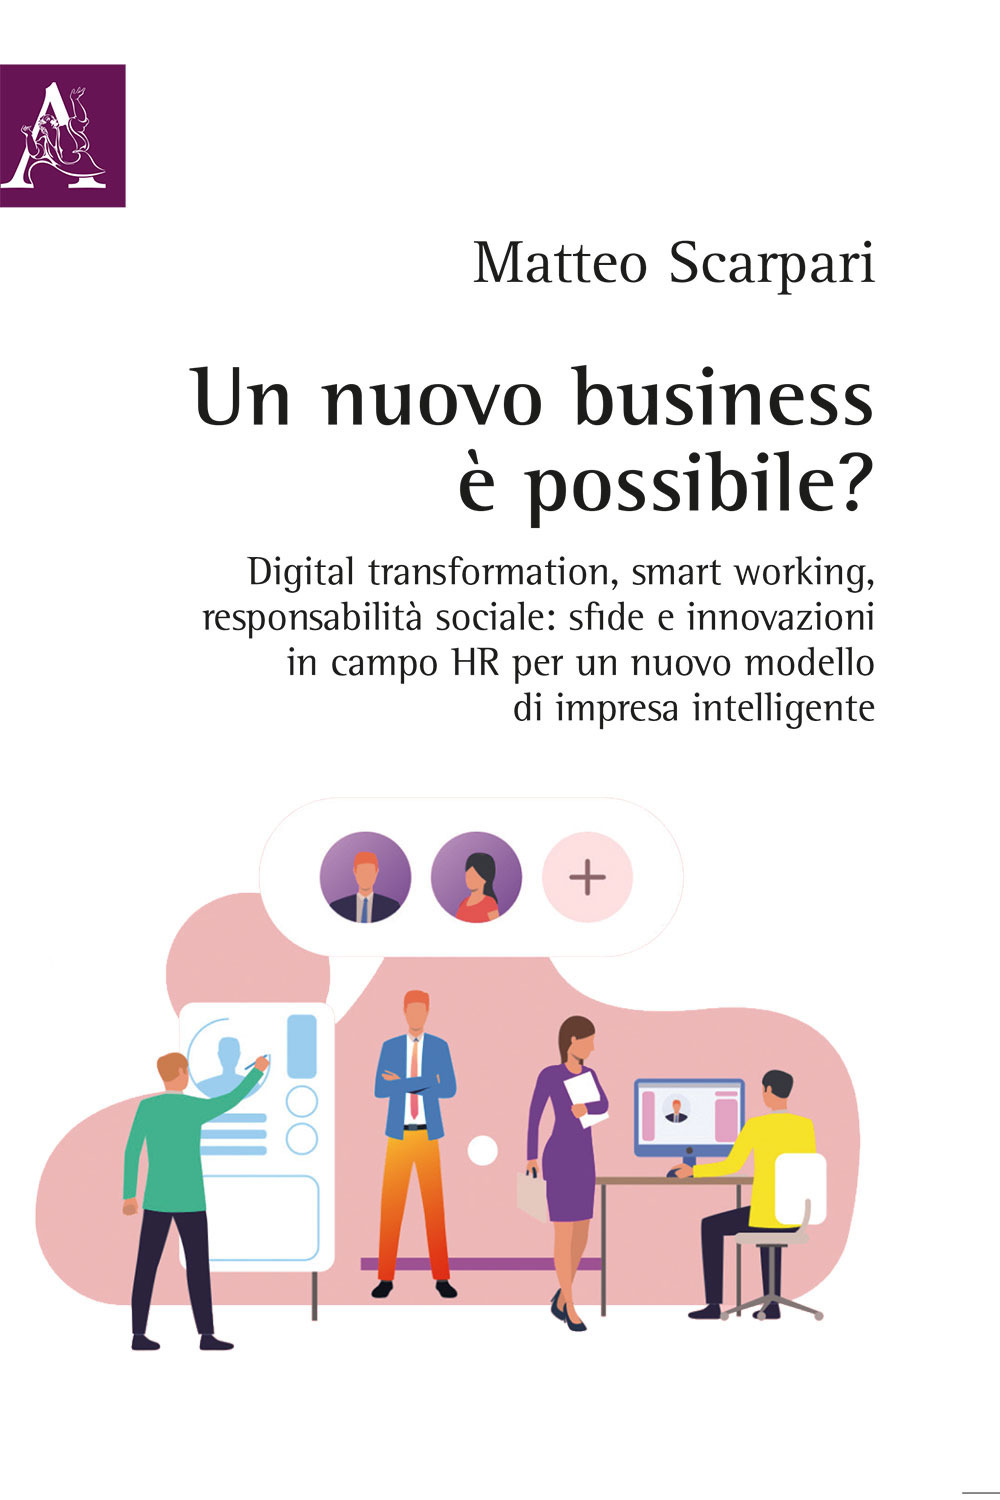 Un nuovo business è possibile? Digital transformation, smart working, responsabilità sociale: sfide e innovazioni in campo HR per un nuovo modello di impresa intelligente